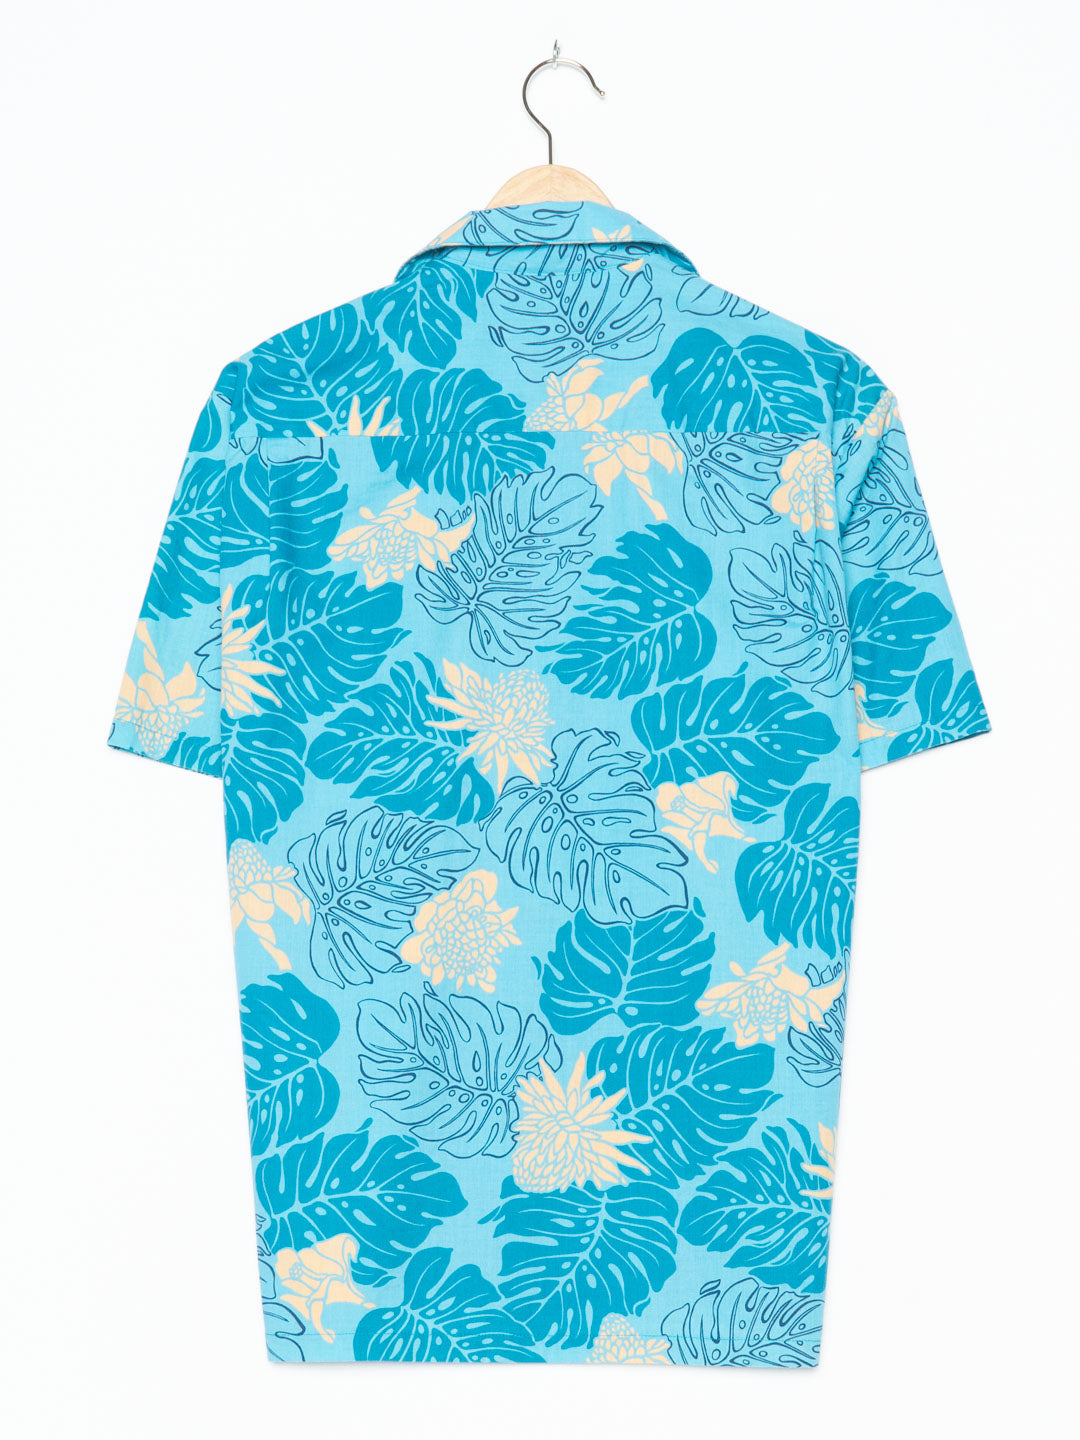 The Hawaiian Original Blue Hawaiian Shirt